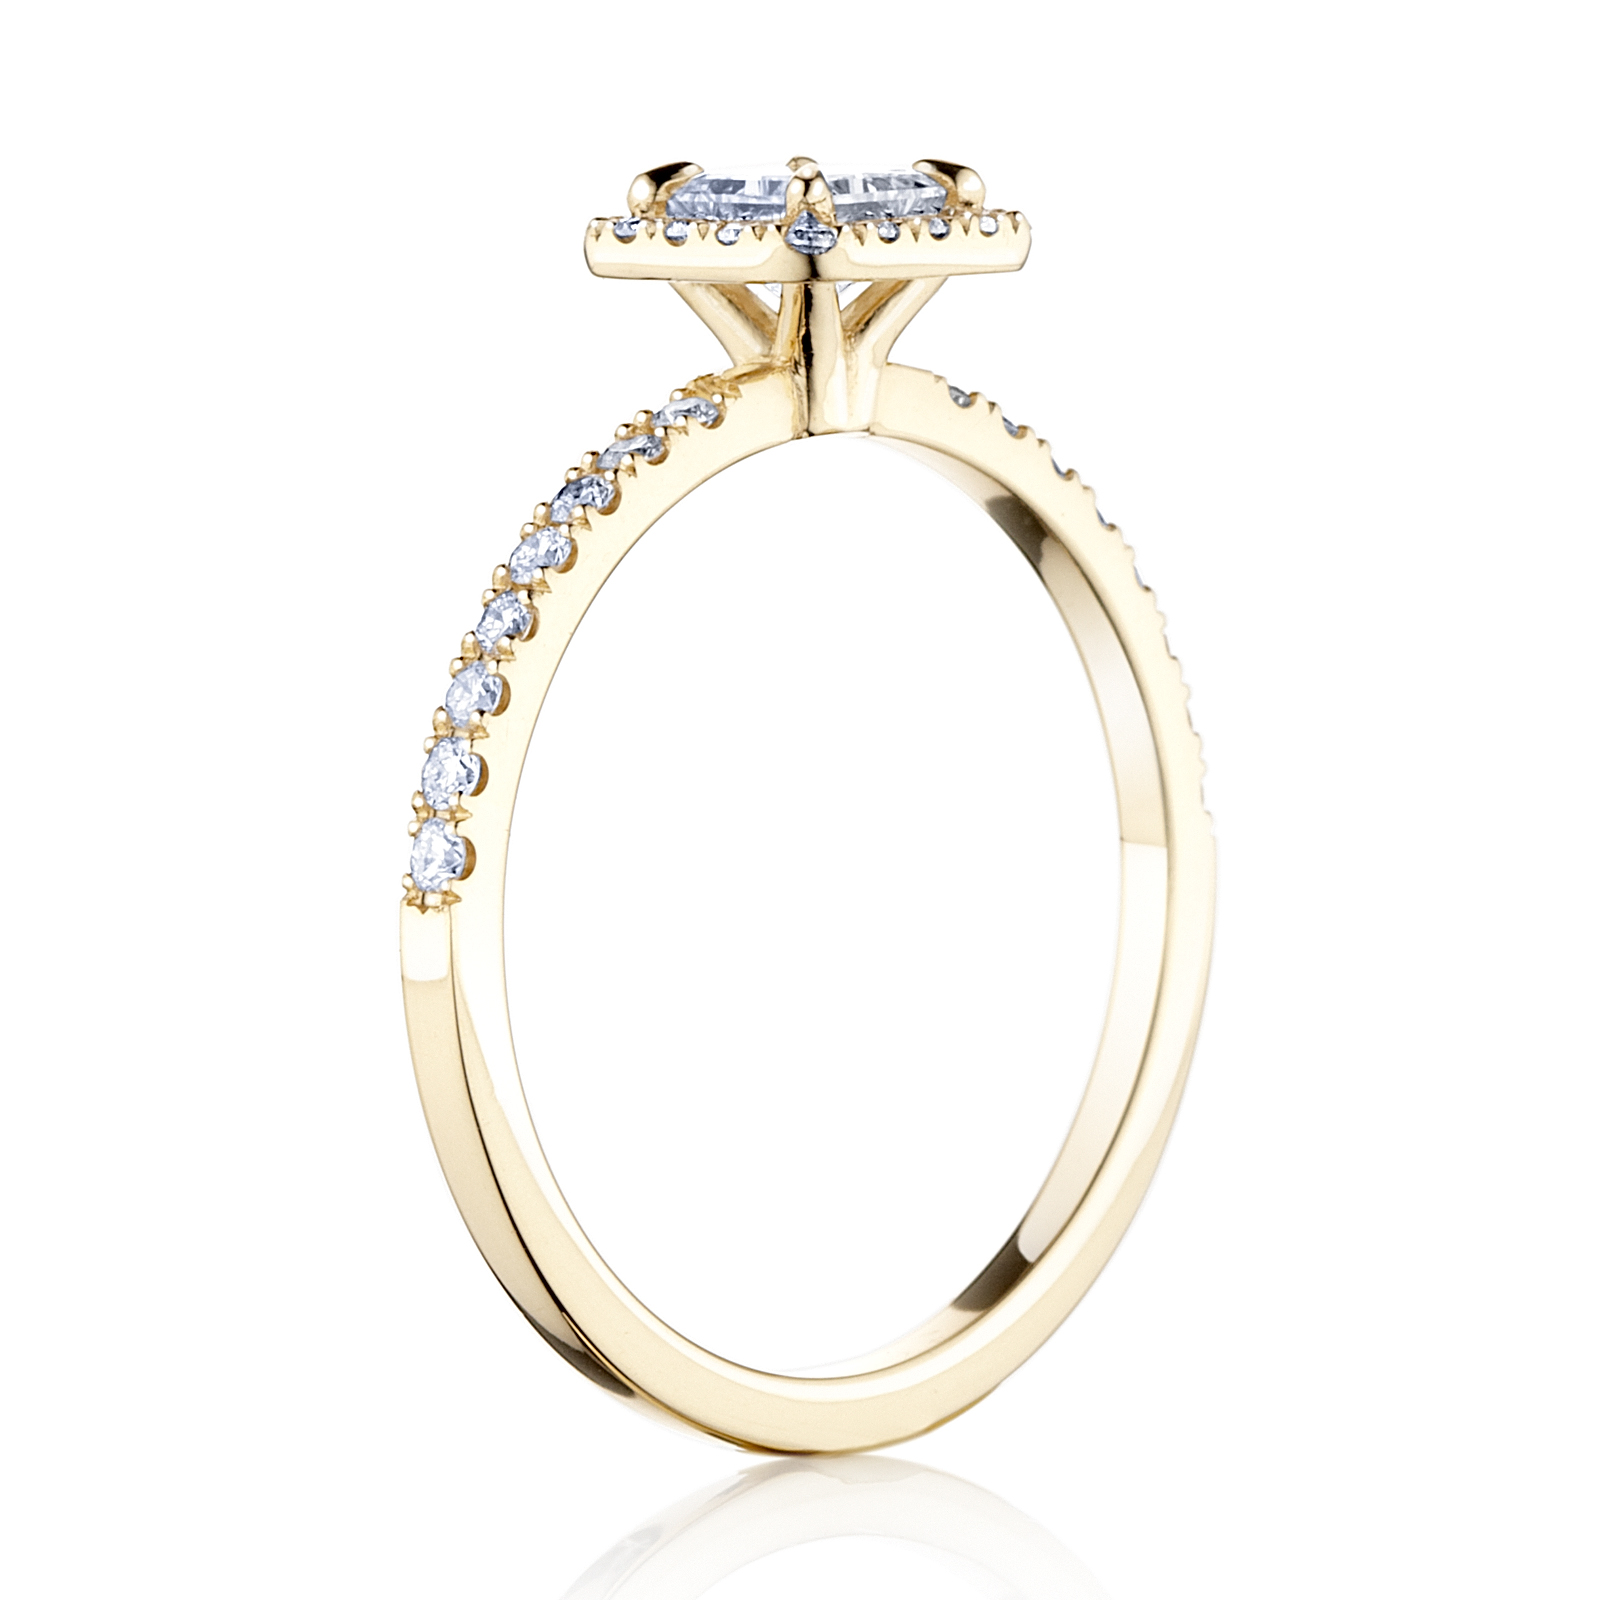 Prsteň Sharon - žlté zlato s prírodným diamantom.